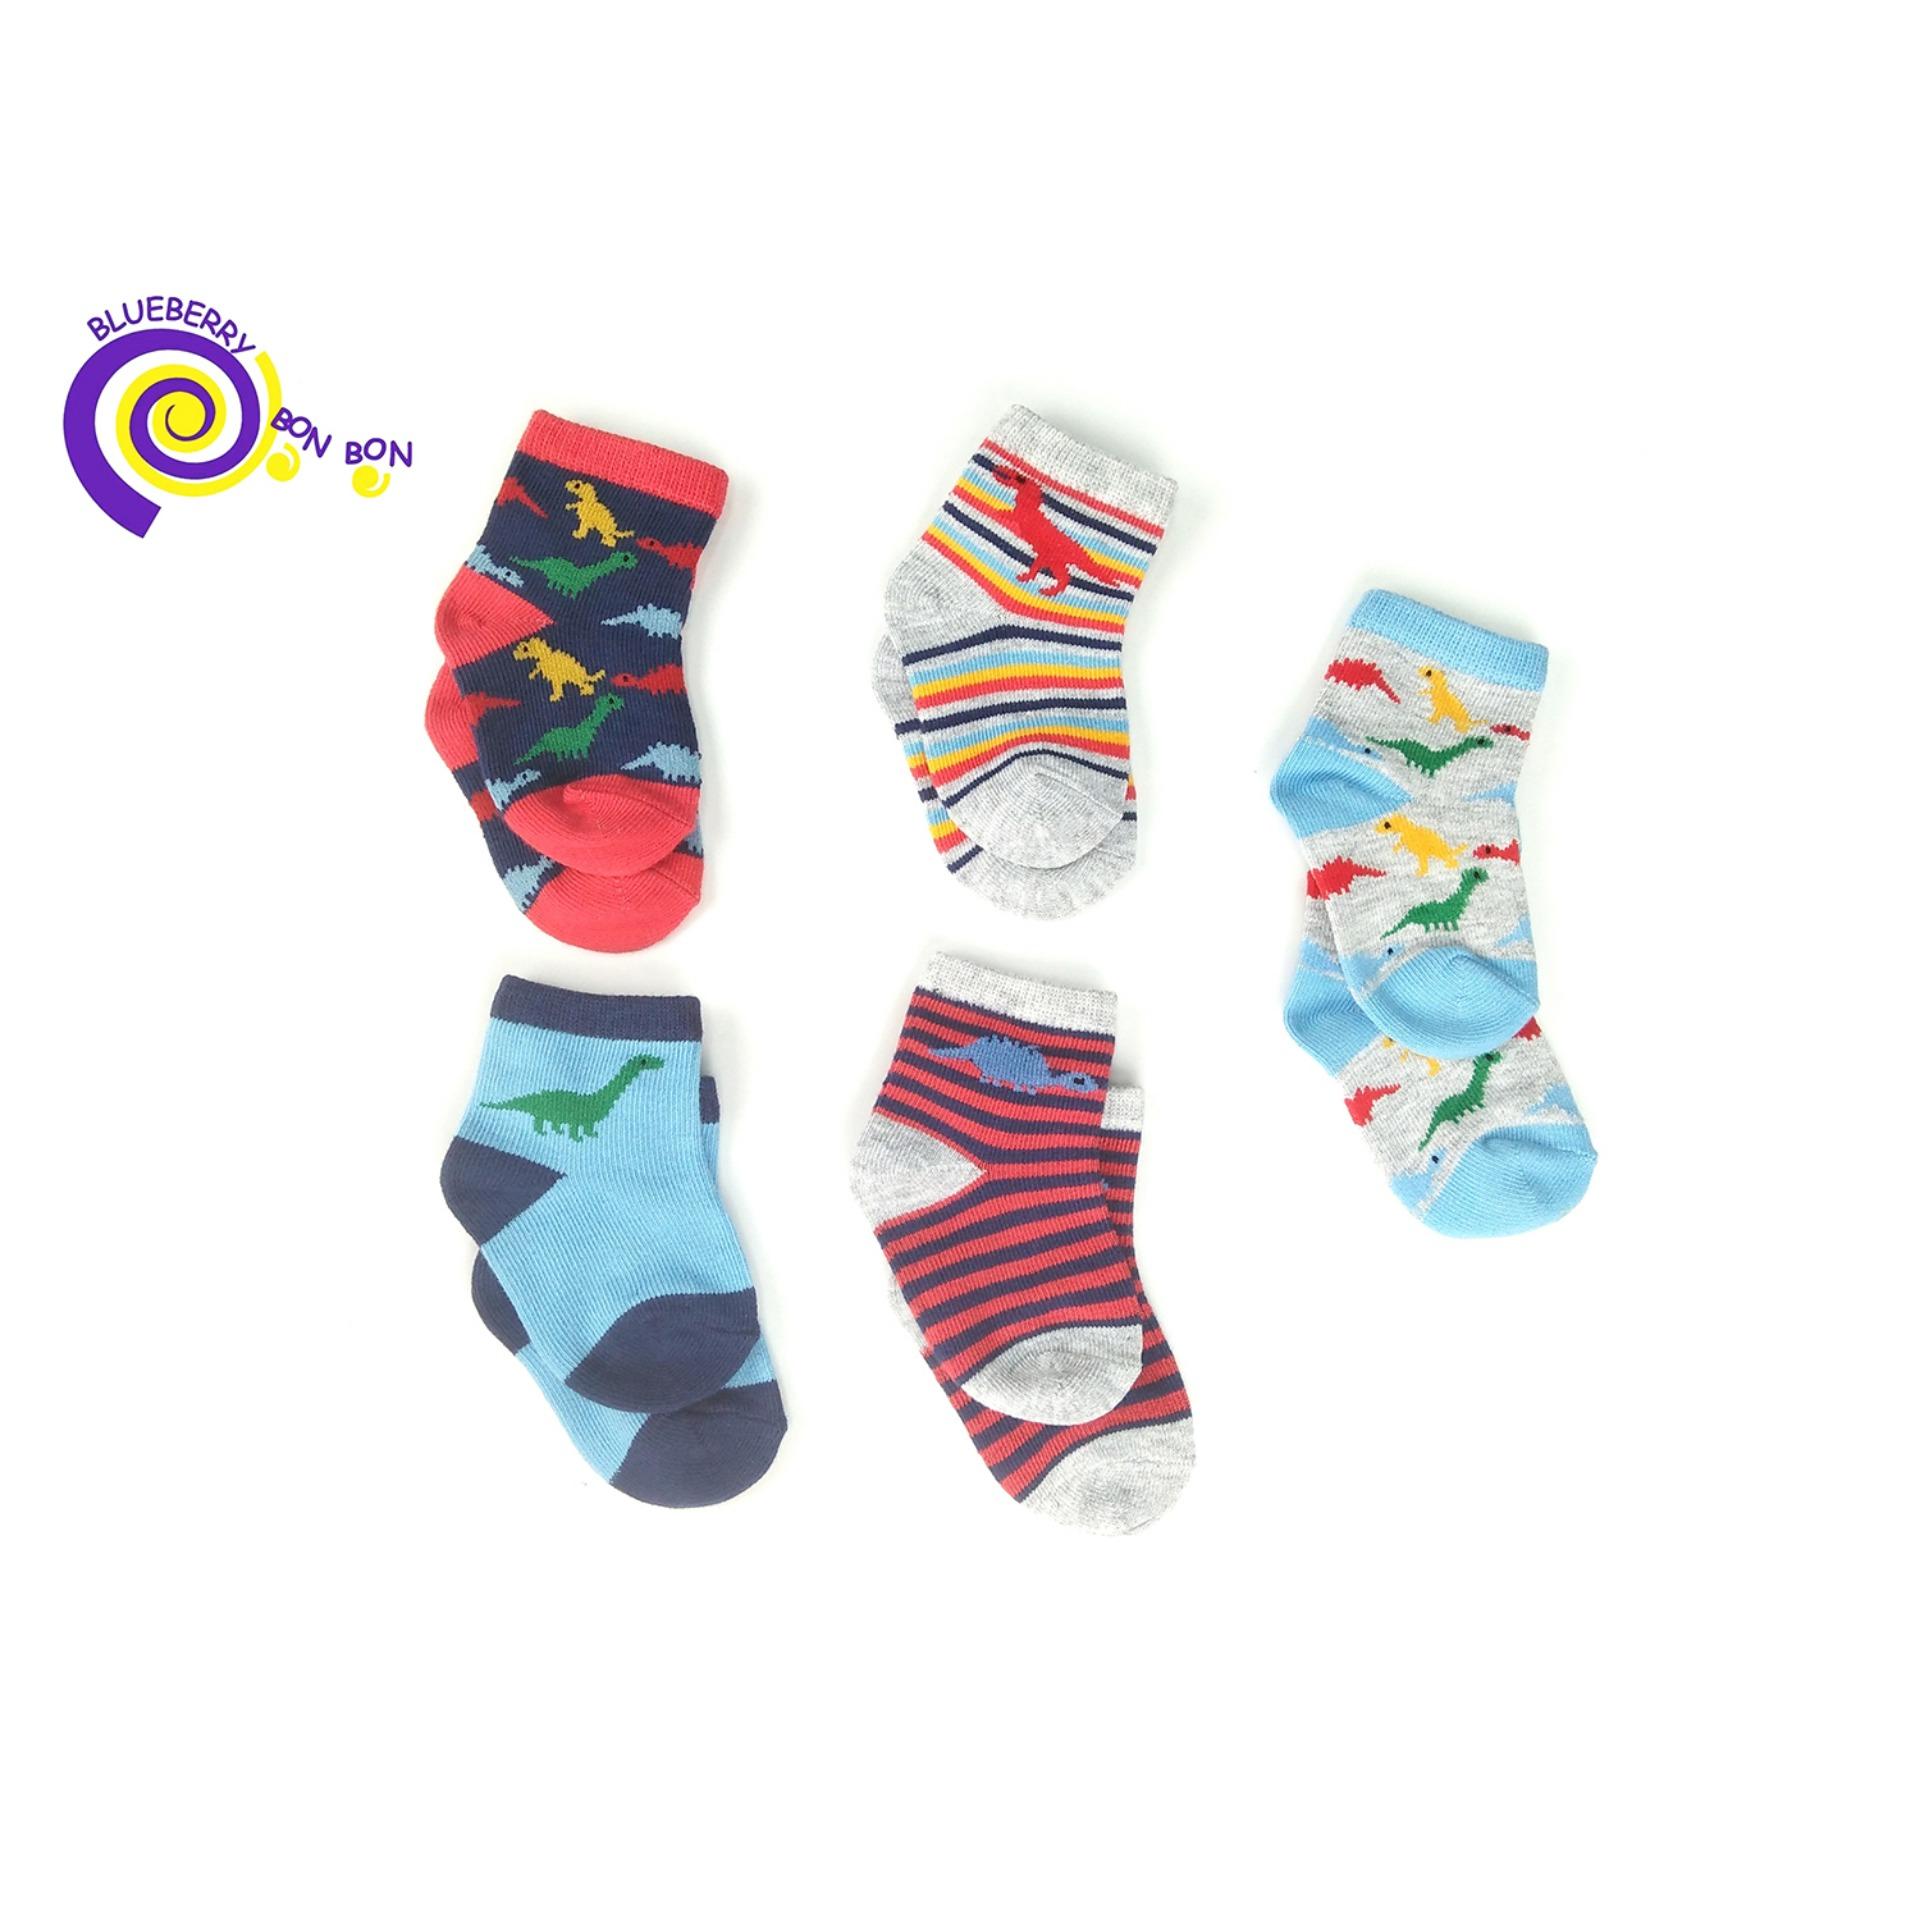 ถุงเท้าเด็ก ออร์แกนิคคอตตอน Sock Organic cotton 100% ลายไดโนเสาร์ สำหรับเด็กอายุ 0-6 M, 6-12 M, 12-24 M, Brand : Blueberry Bon Bon (Colorful Organic cotton socks)